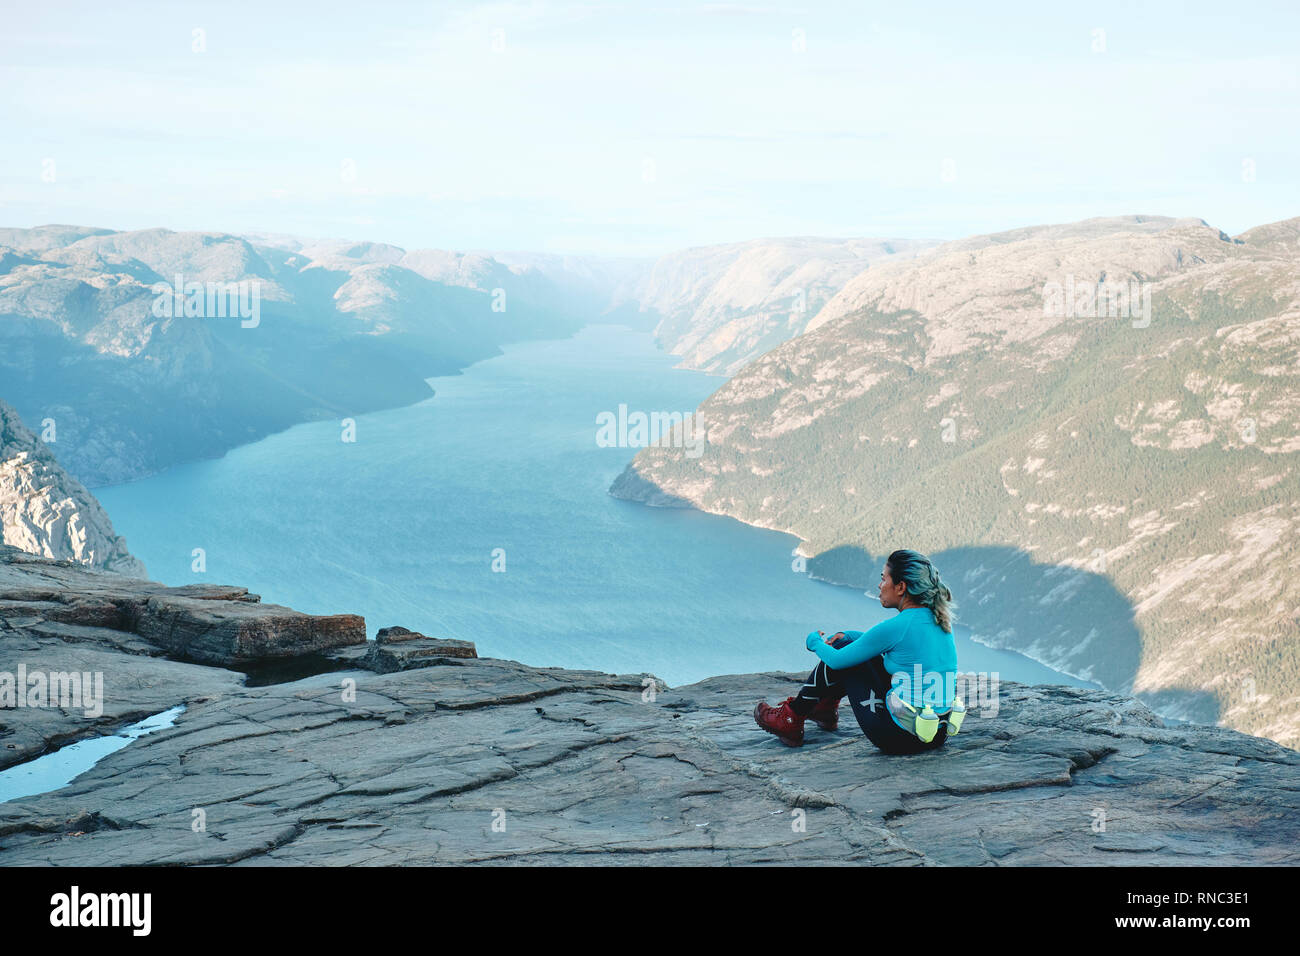 Una ragazza escursionista in appoggio e godendo della vista sulla parte superiore del Pulpito Rock / Prekestolen o Prekestolen in Norvegia Foto Stock